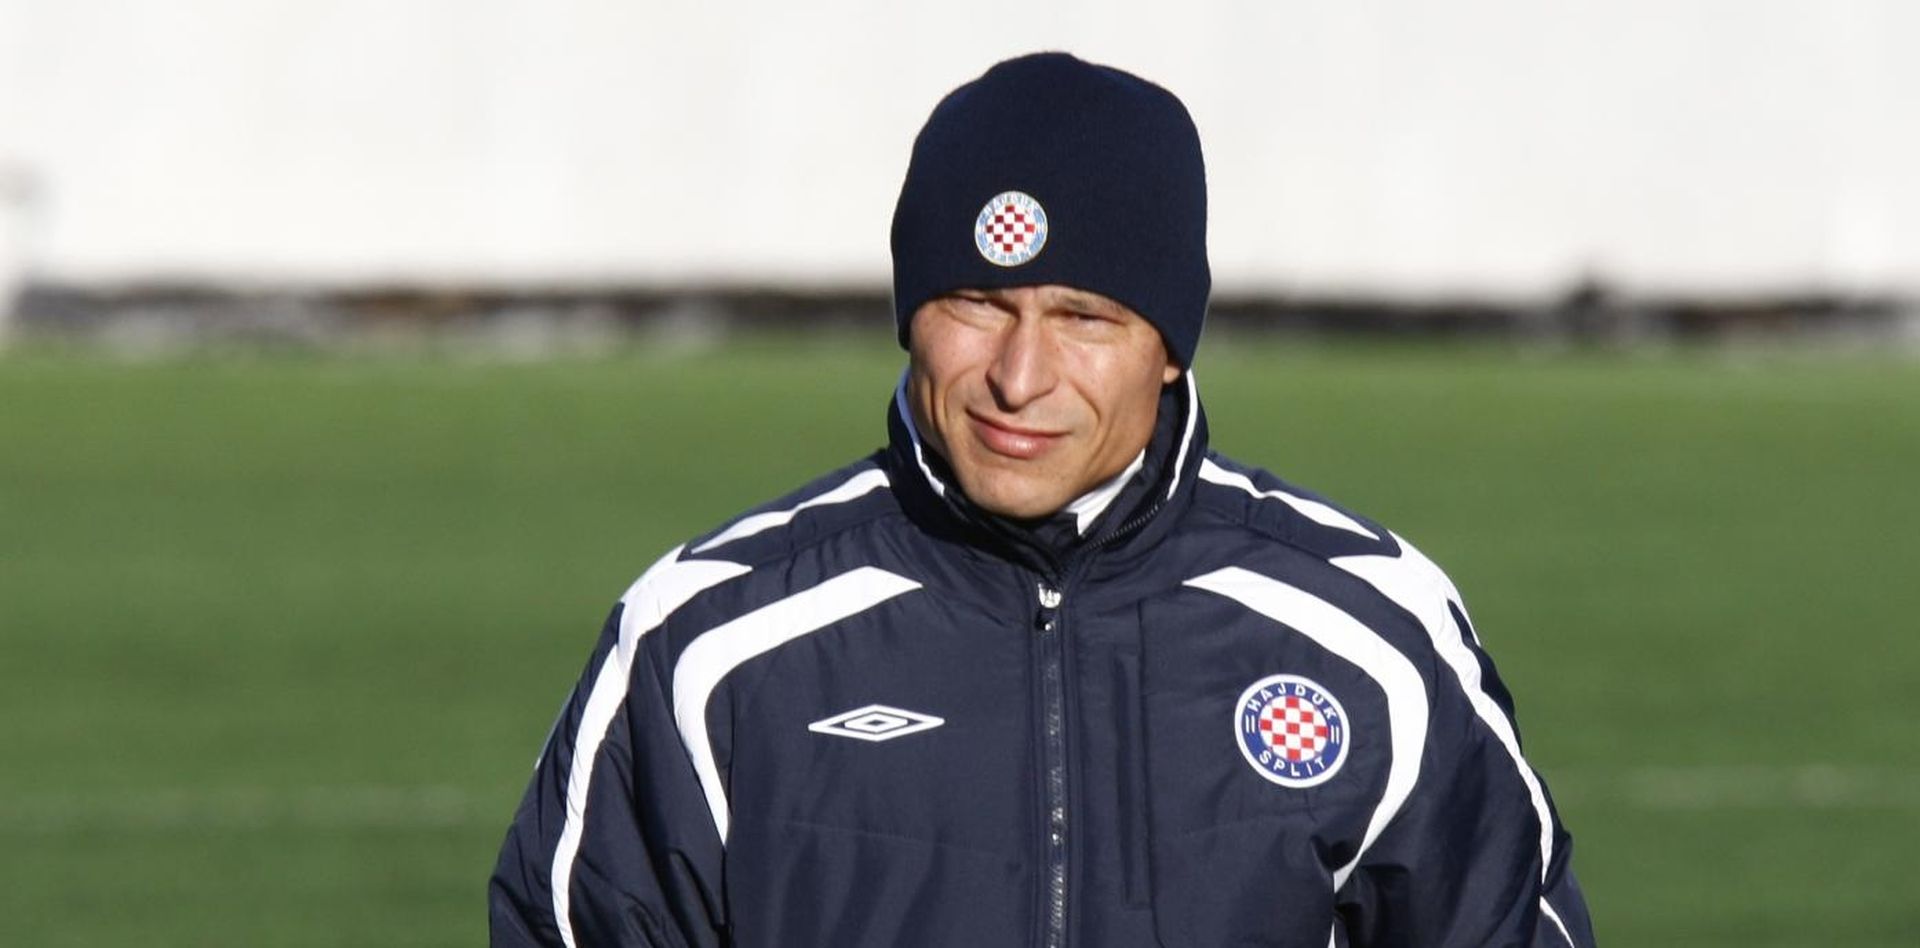 16.02.2012., Split - Trener Hajduka Krasimir Balakov na treningu, na pomocnom terenu na Poljudu.
Photo: Ivo Cagalj/PIXSELL